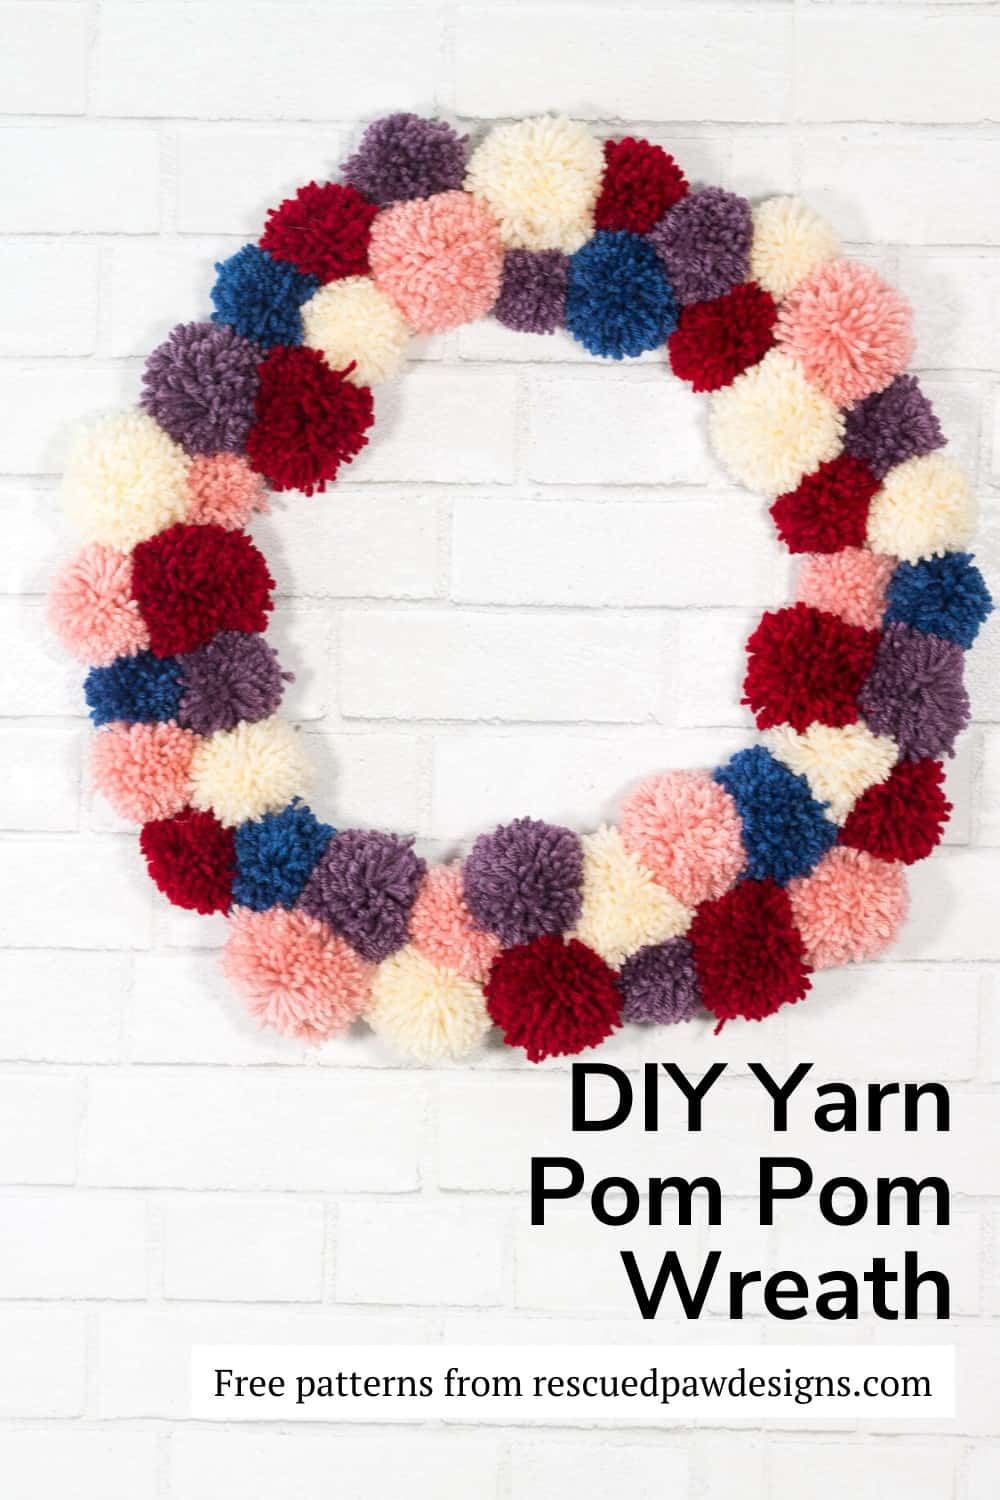 DIY Yarn Pom Pom Wreath Tutorial by Easy Crochet via @easycrochetcom